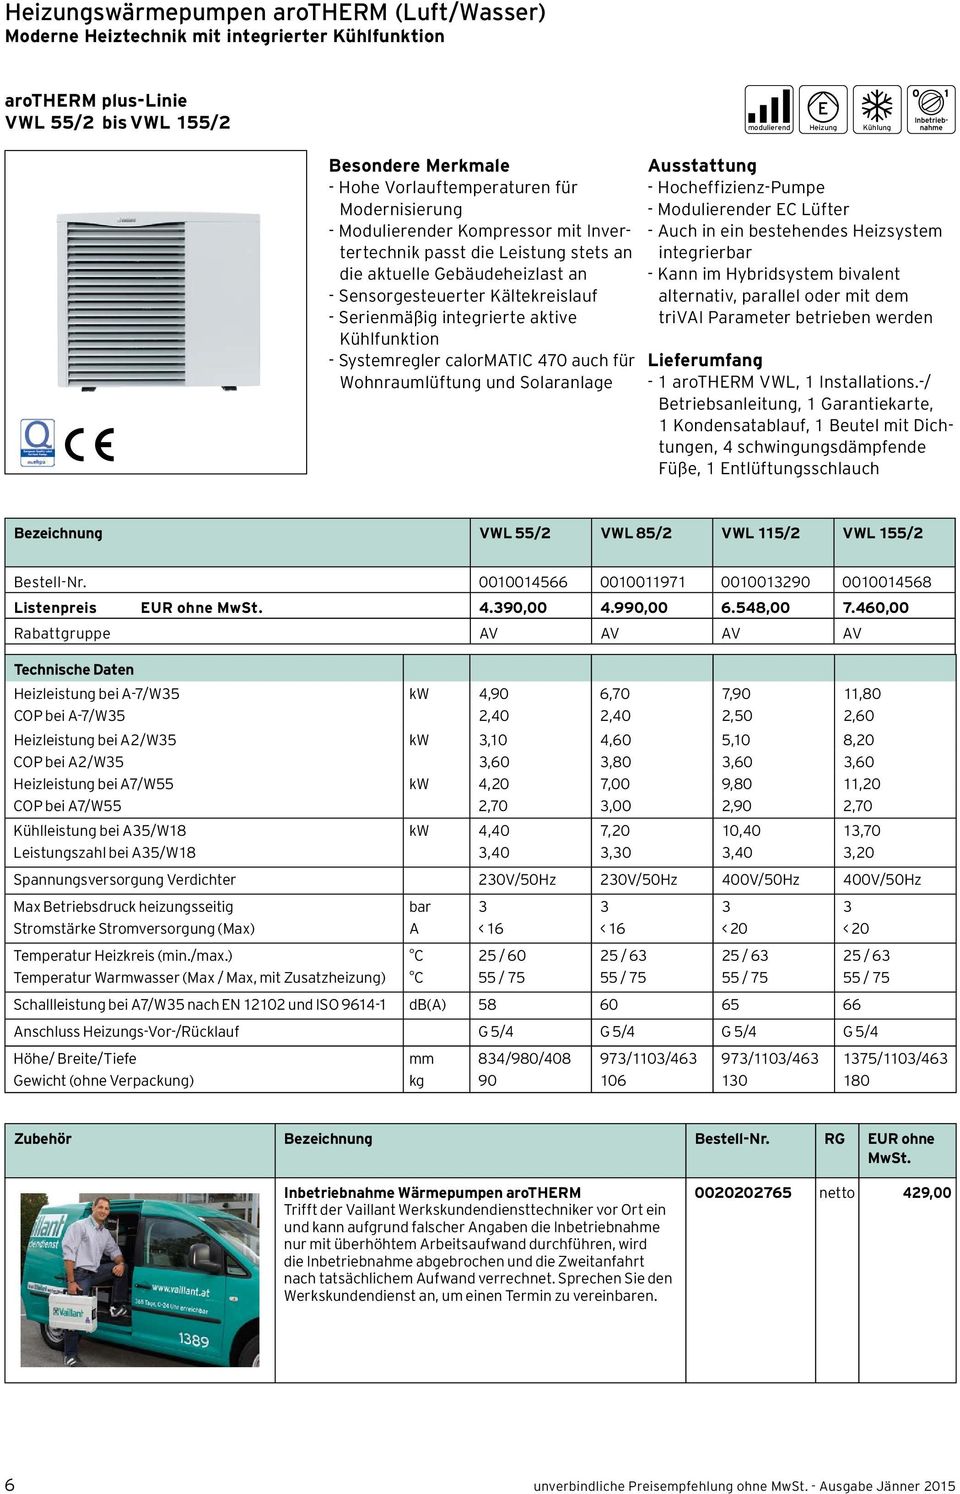 integrierte aktive Kühlfunktion - Systemregler calormatic 470 auch für Wohnraumlüftung und Solaranlage Ausstattung - Hocheffizienz-Pumpe - Modulierender EC Lüfter - Auch in ein bestehendes Heizsystem